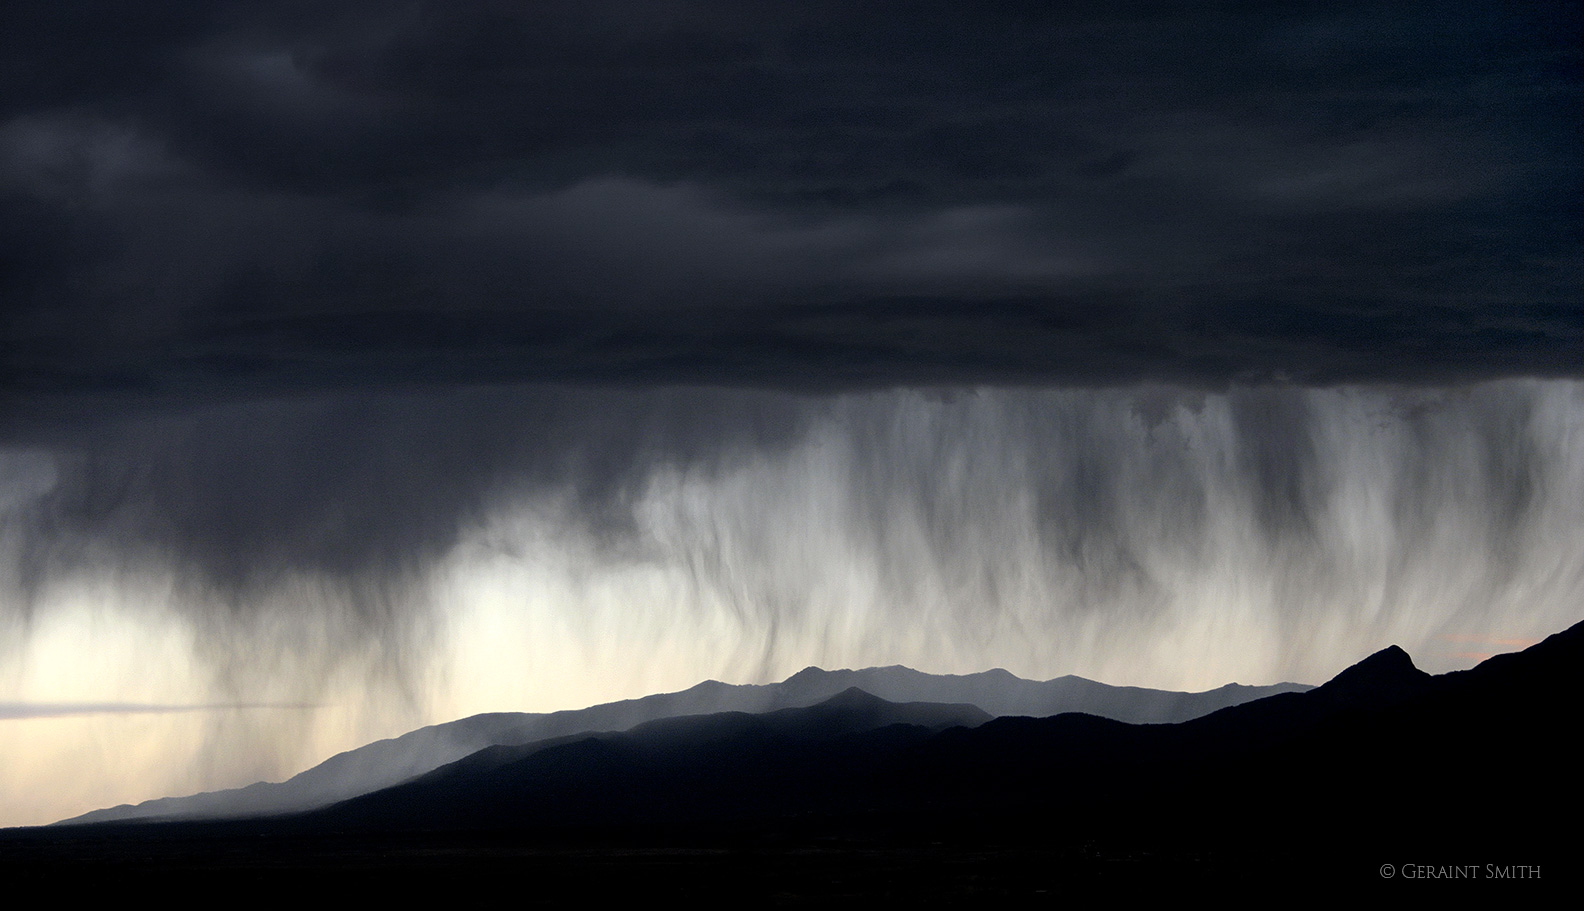 Walking rain, rain curtain, Taos mountains